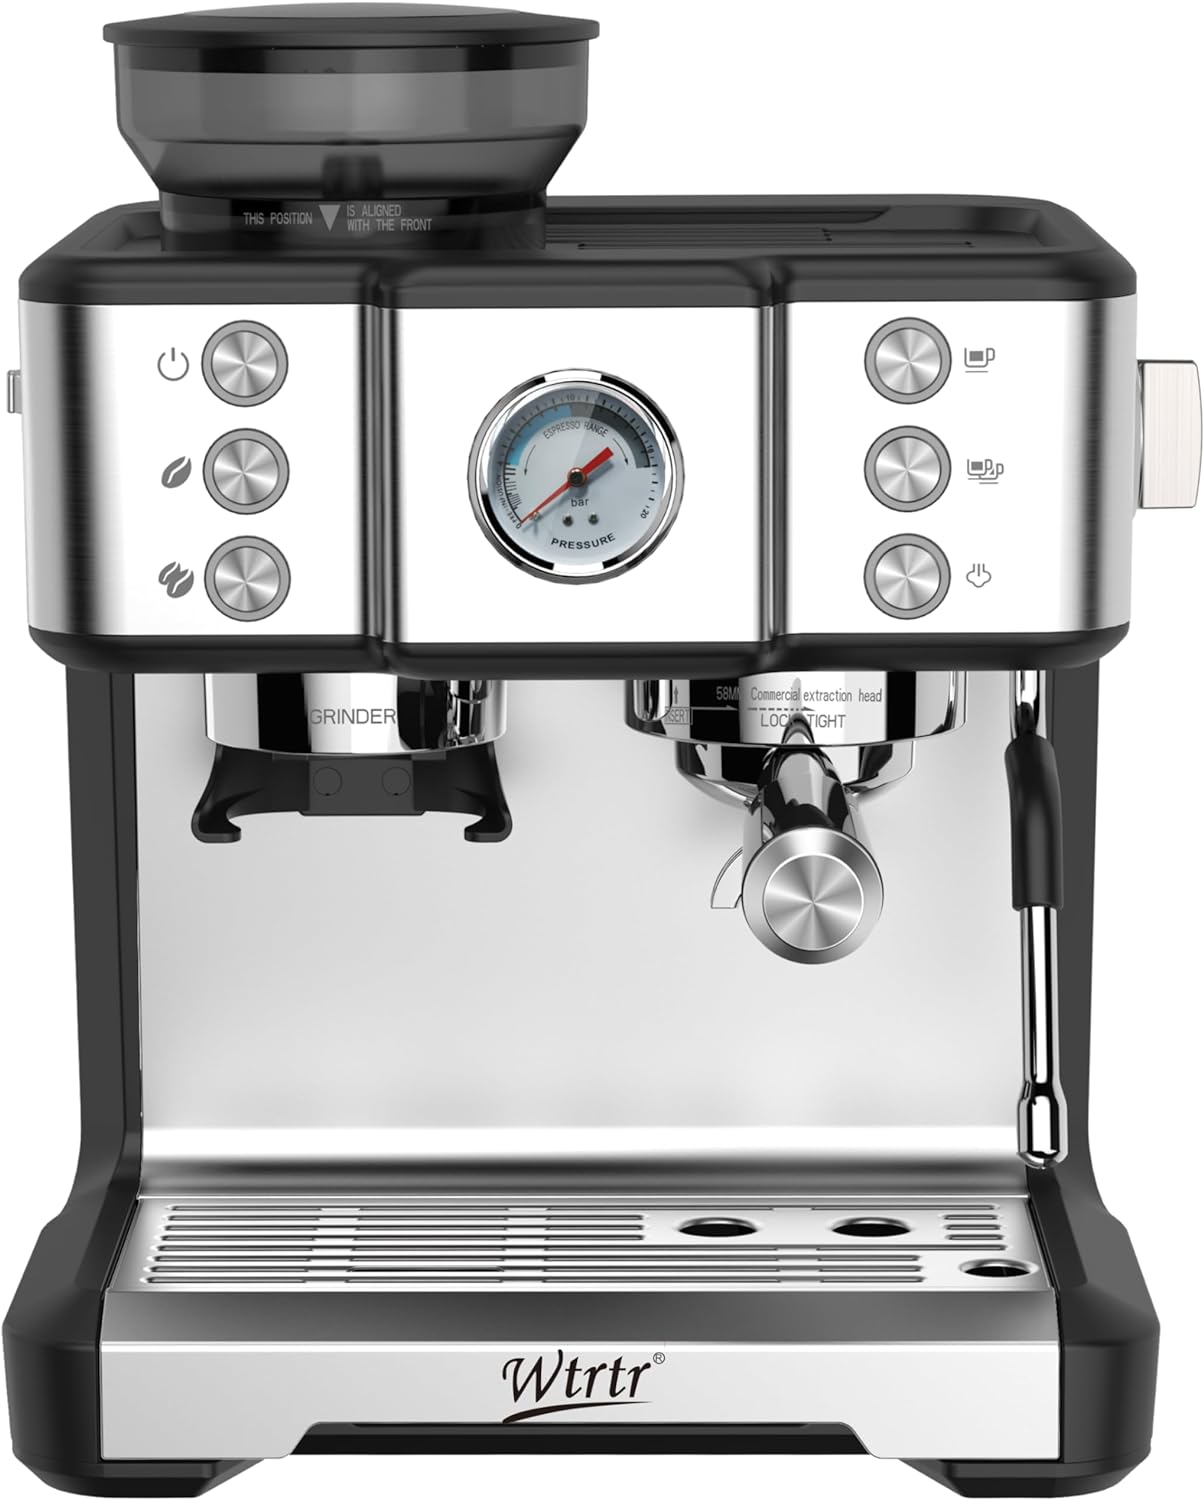 دستگاه اسپرسوساز و قهوه ساز مدل Wtrtr Barista WTR-7000 - ارسال ۱۰ الی ۱۵ روز کاری